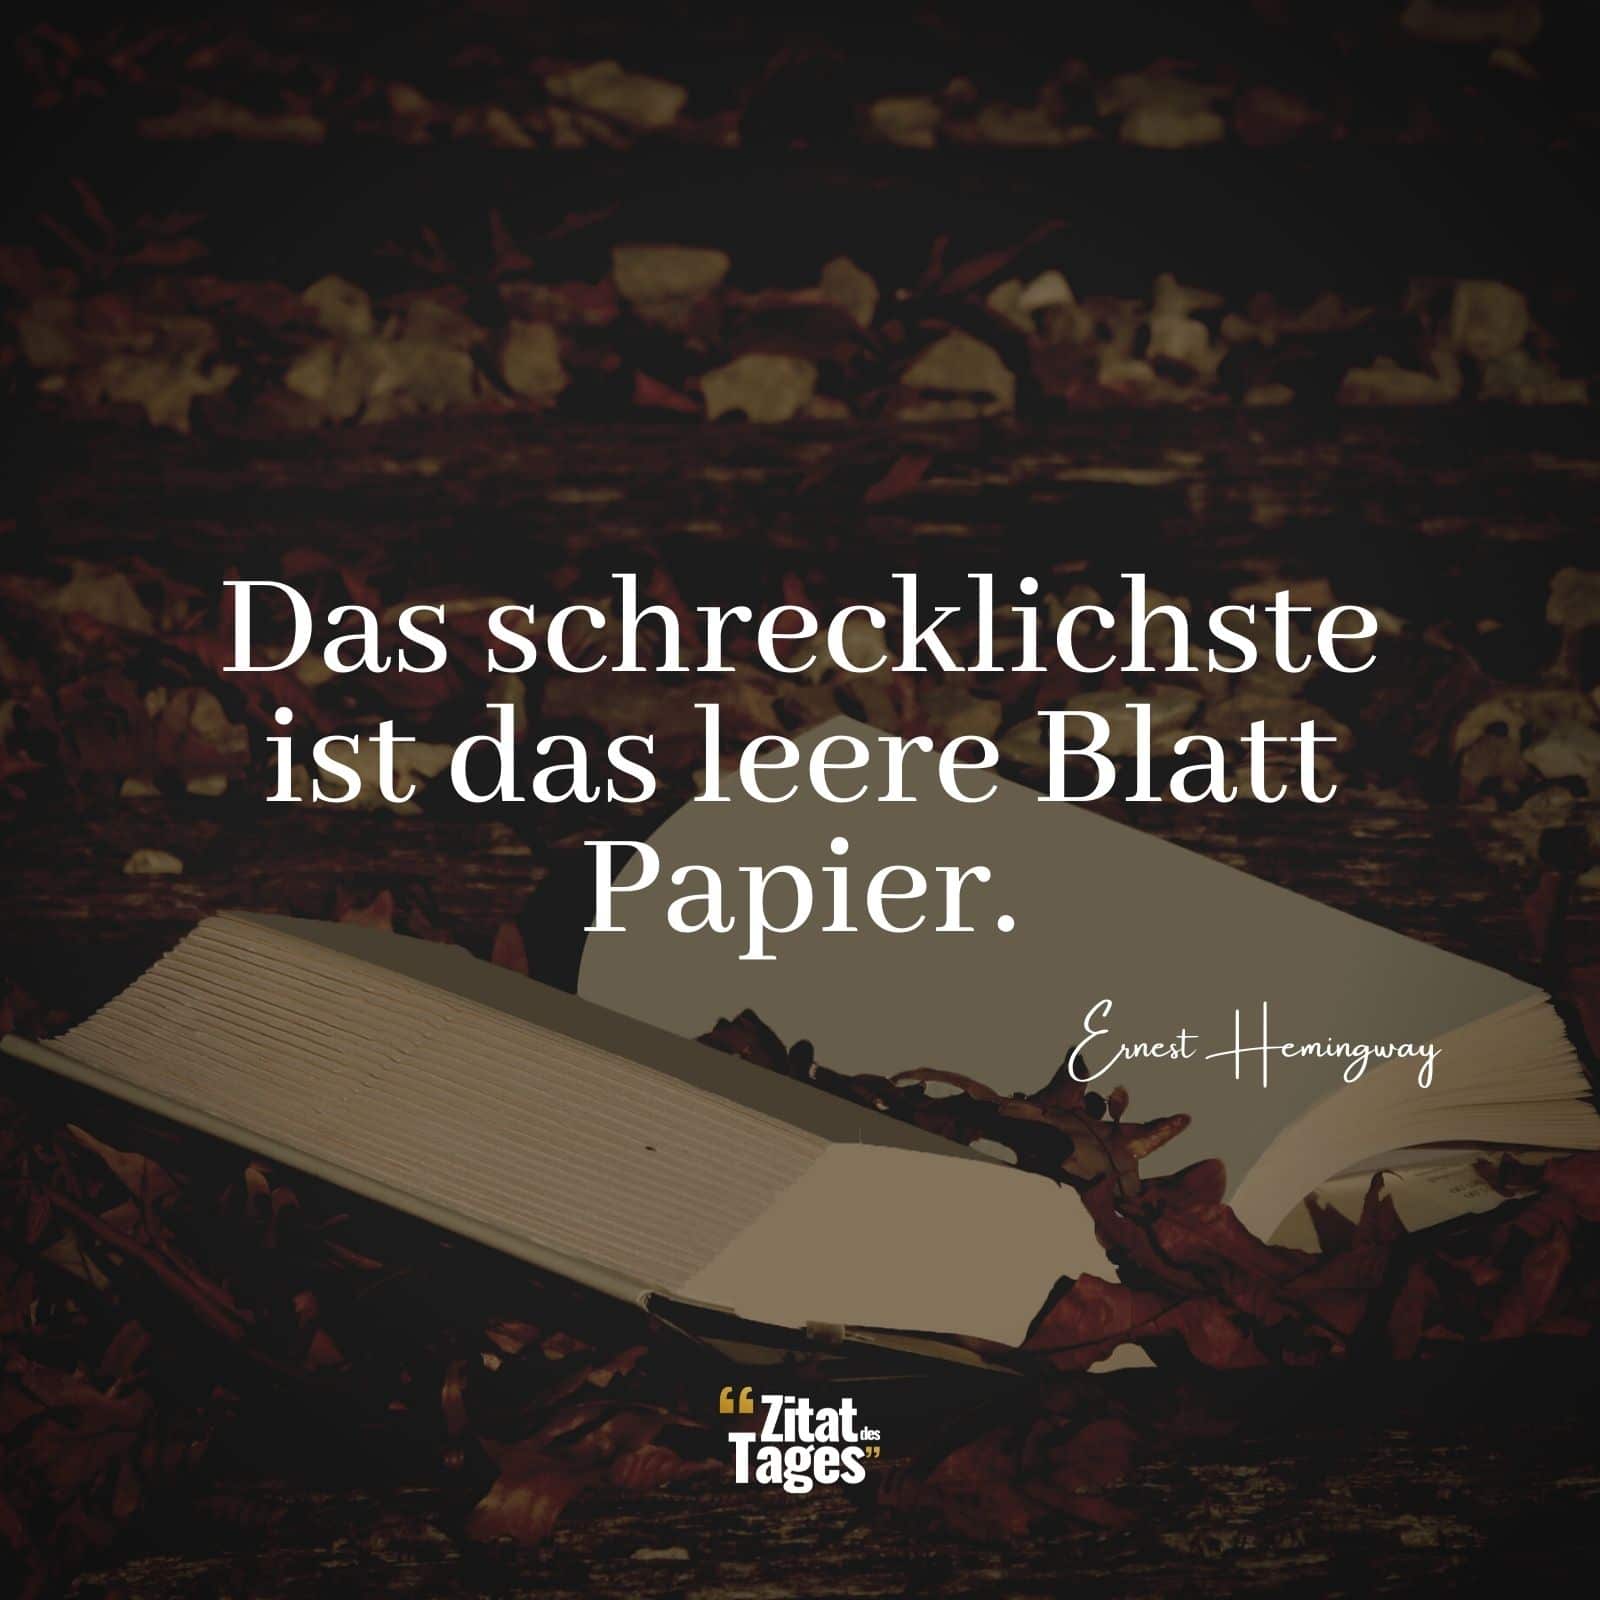 Das schrecklichste ist das leere Blatt Papier. - Ernest Hemingway